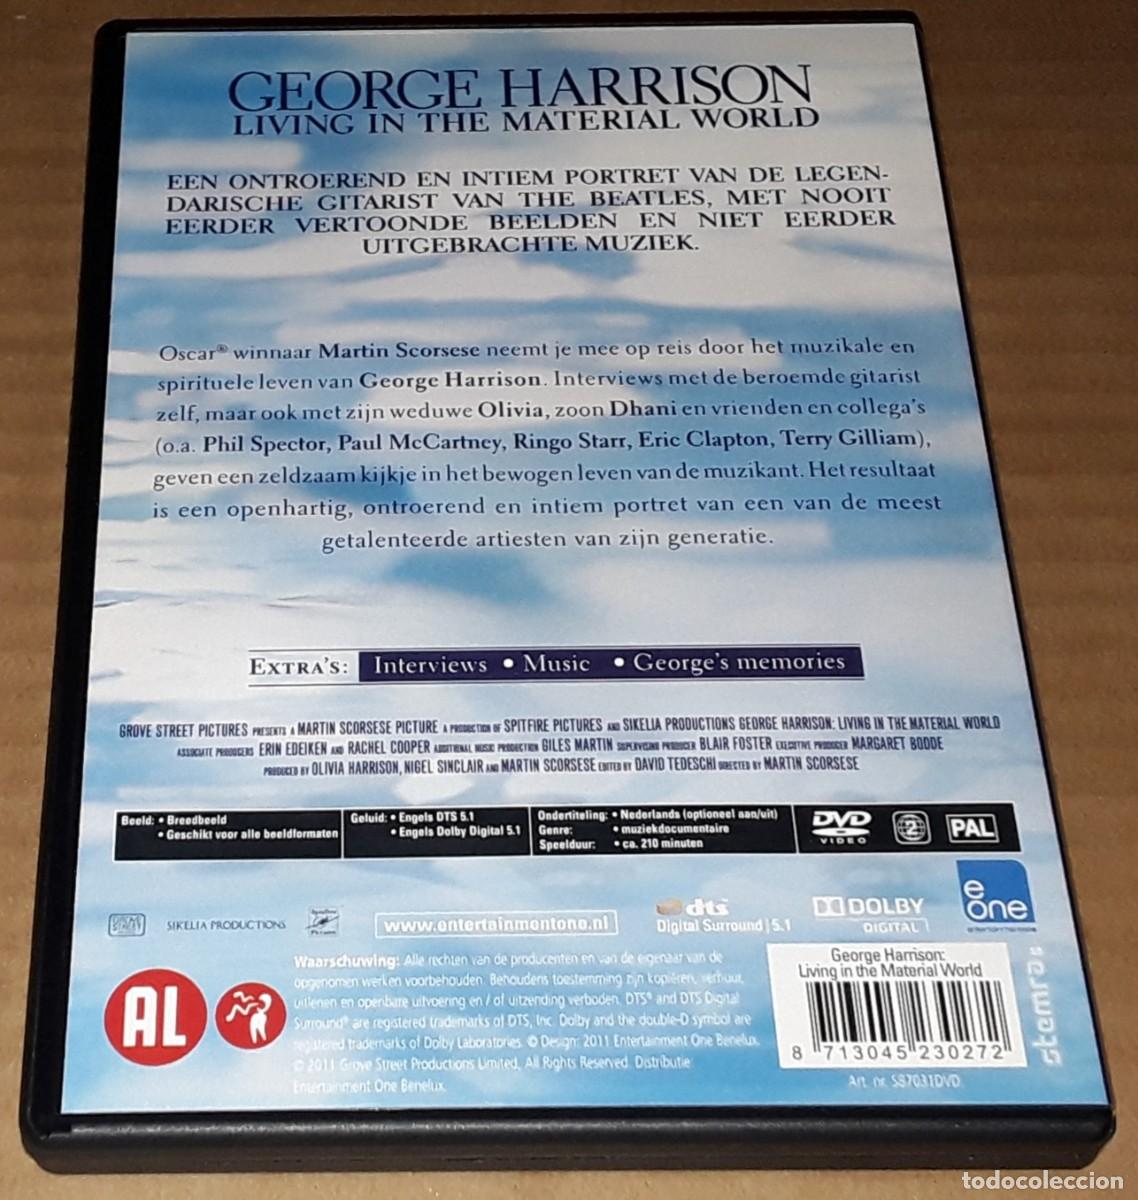 péndulo guión Faial 2 dvd - george harrison - living in the materia - Compra venta en  todocoleccion